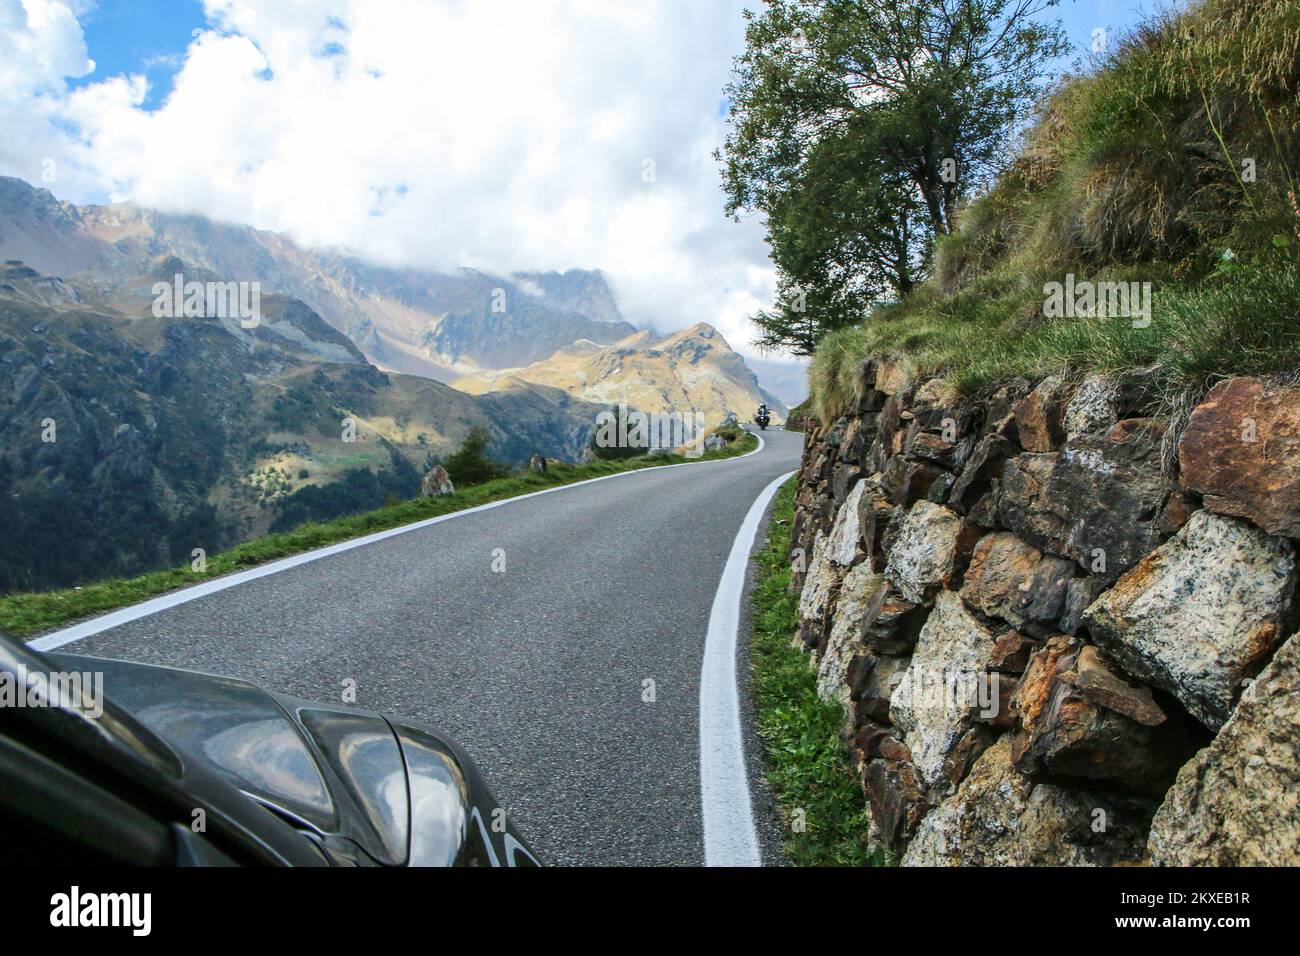 La vista della strada che sale al Passo di Gavia in Italia. La strada stretta e impegnativa verso la cima. Foto Stock